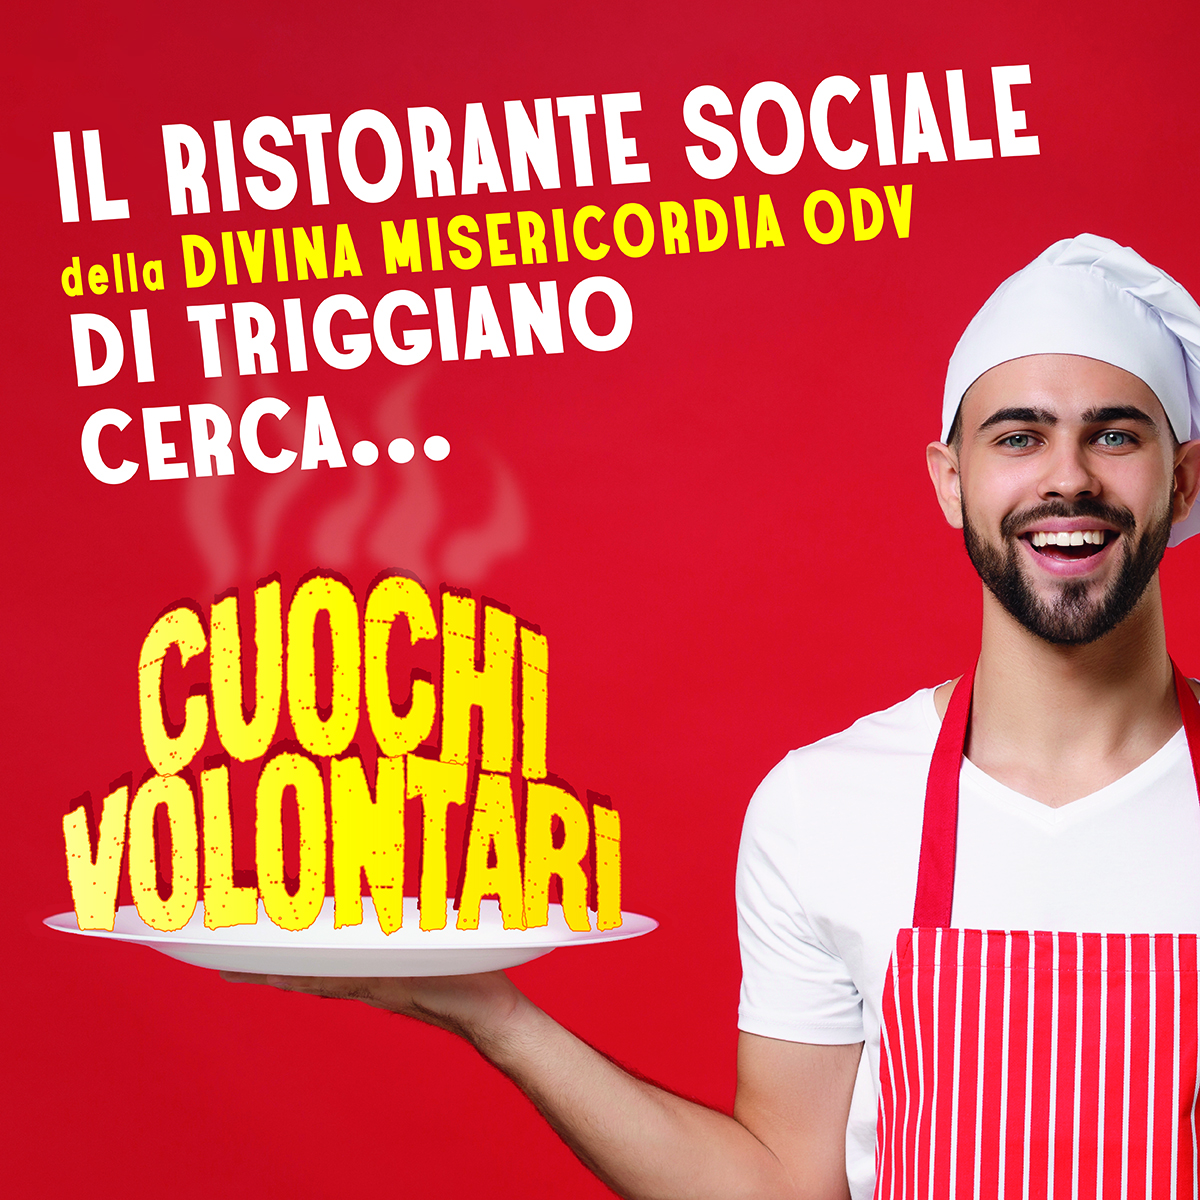 Banner Il Ristorante Sociale di Triggiano cerca Cuochi volontari 2021 Divina Misericordia OdV